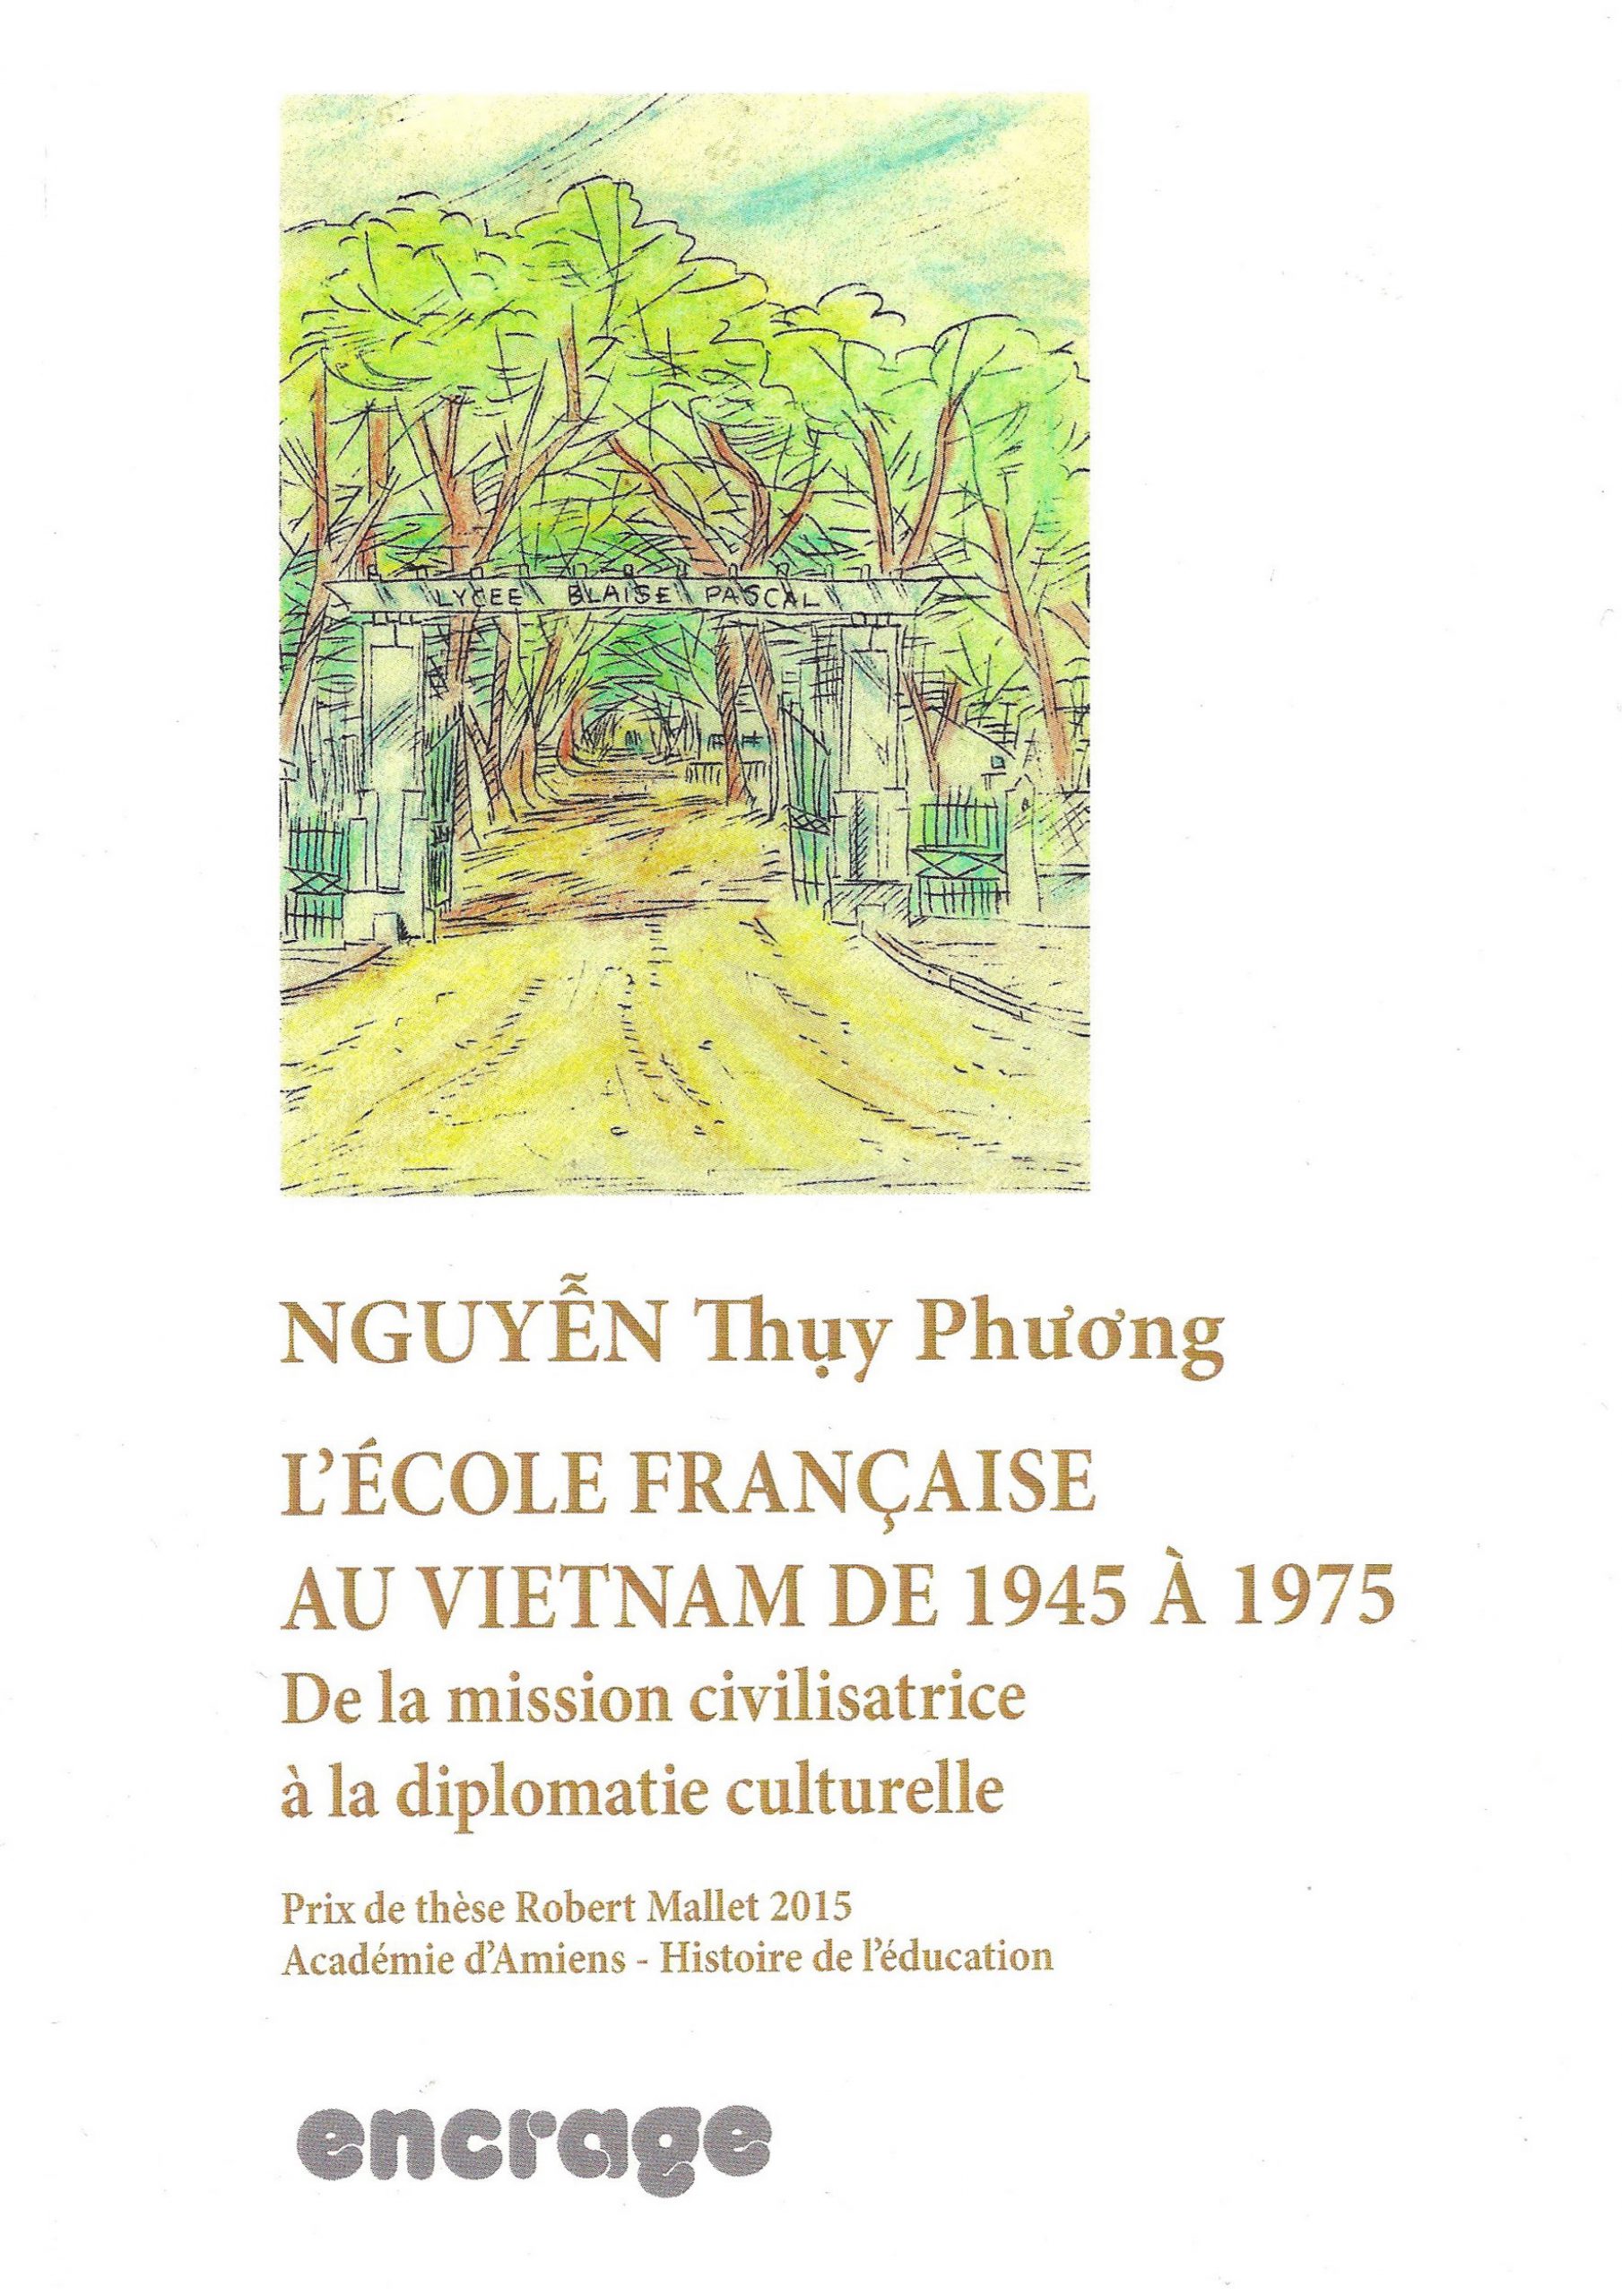 L'école française au Vietnam de 1945 à 1975